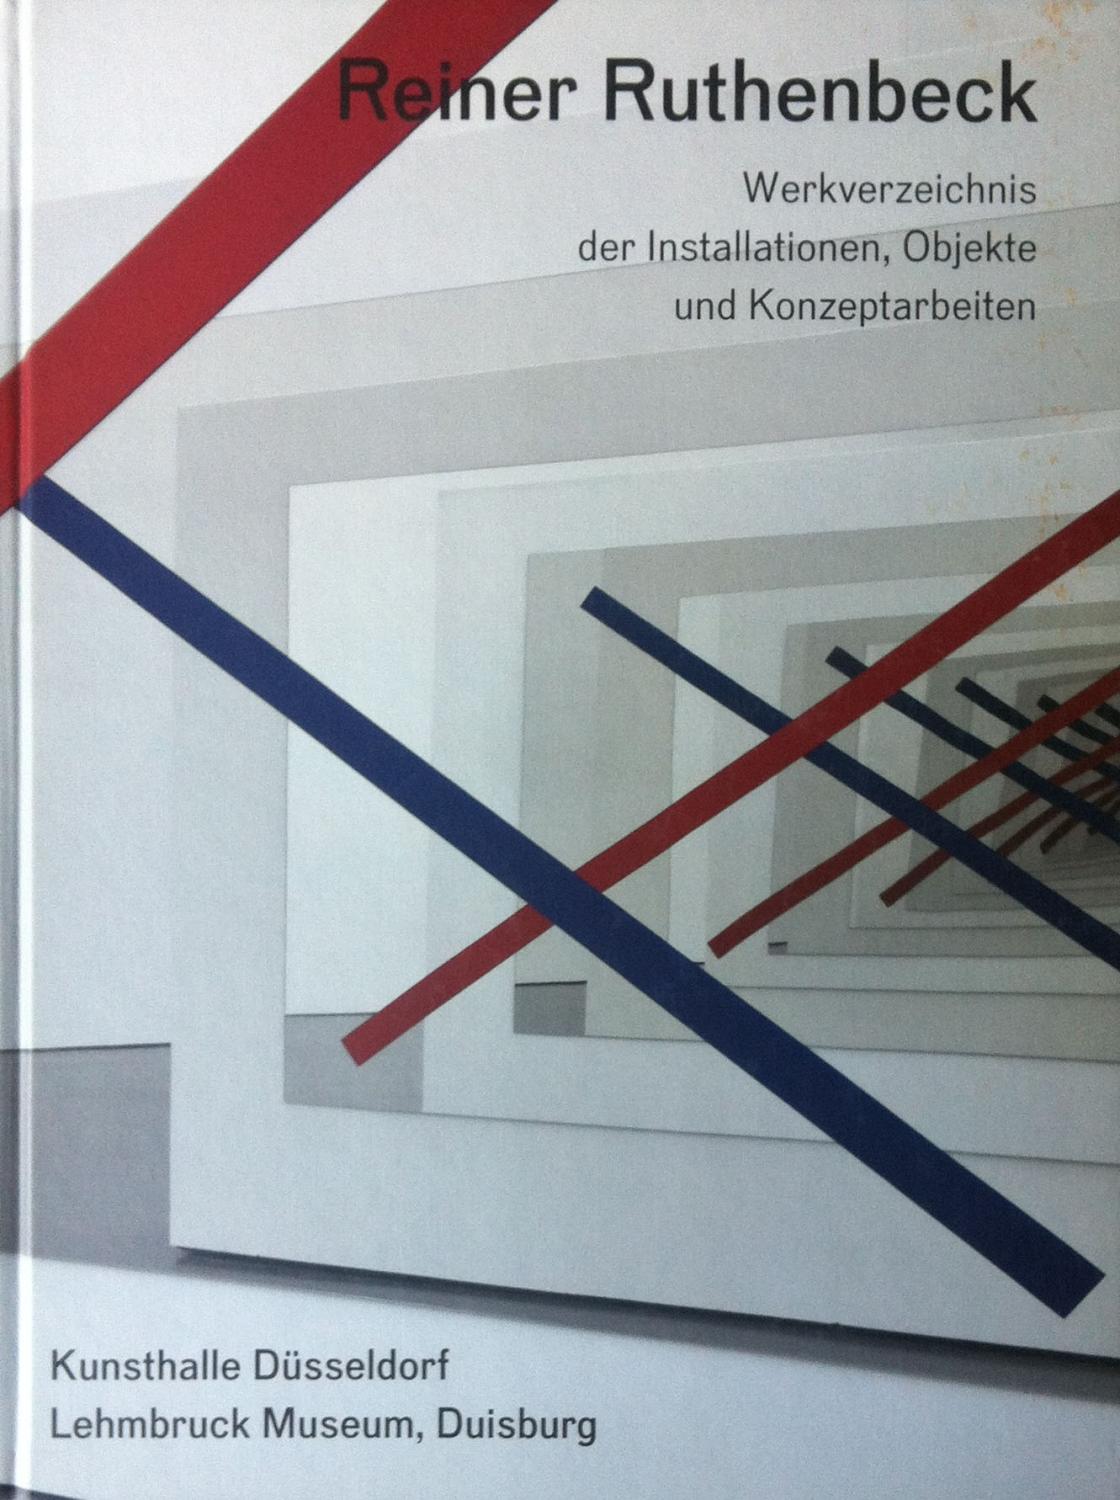 Ruthenbeck, Reiner. Werkverzeichnis der Installationen, Objekte und Konzeptarbeiten.